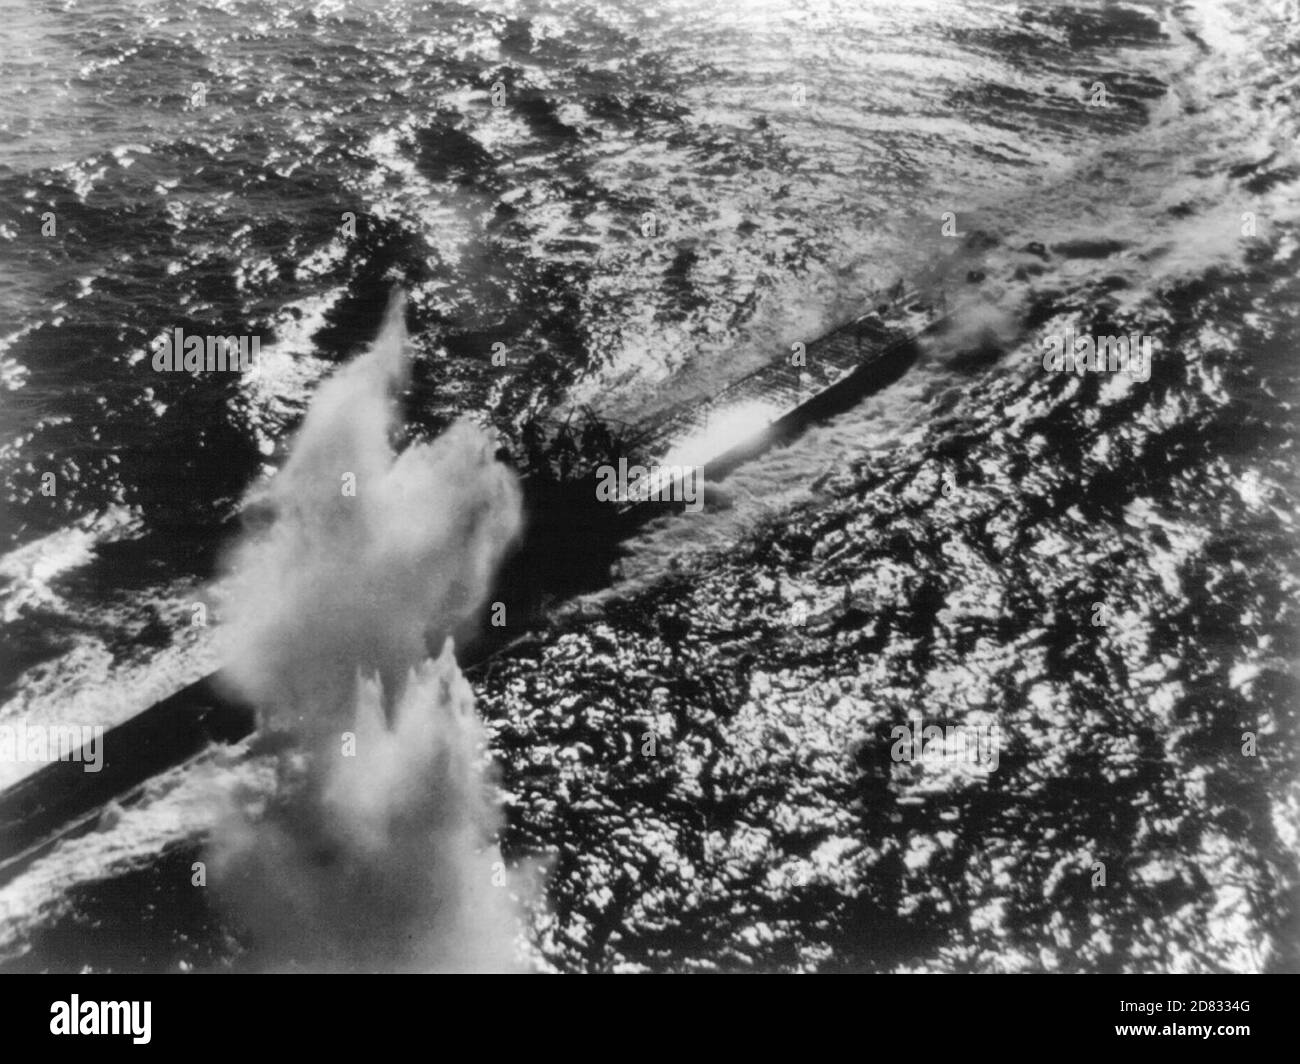 La charge de profondeur souffle le sous-marin nazi - vue aérienne du sous-marin allemand bombardé par les pilotes américains pendant la Seconde Guerre mondiale 1943 Banque D'Images